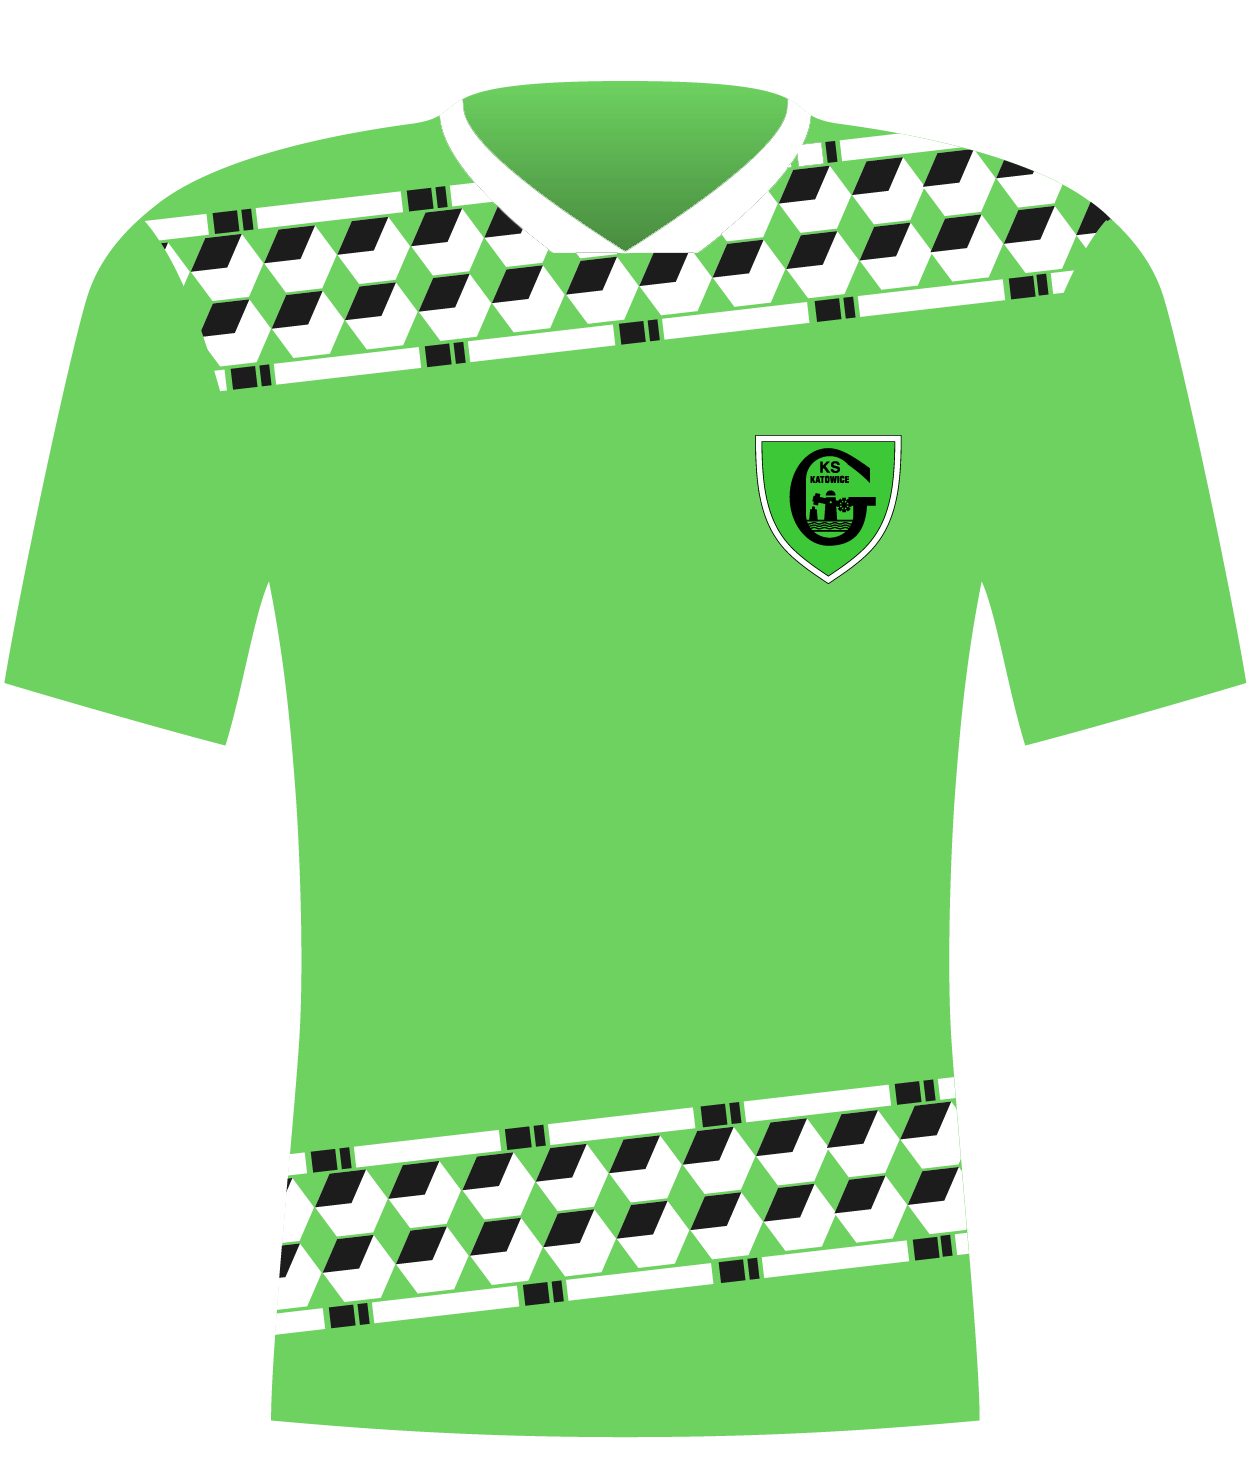 Koszulka GKS Katowice (1994).